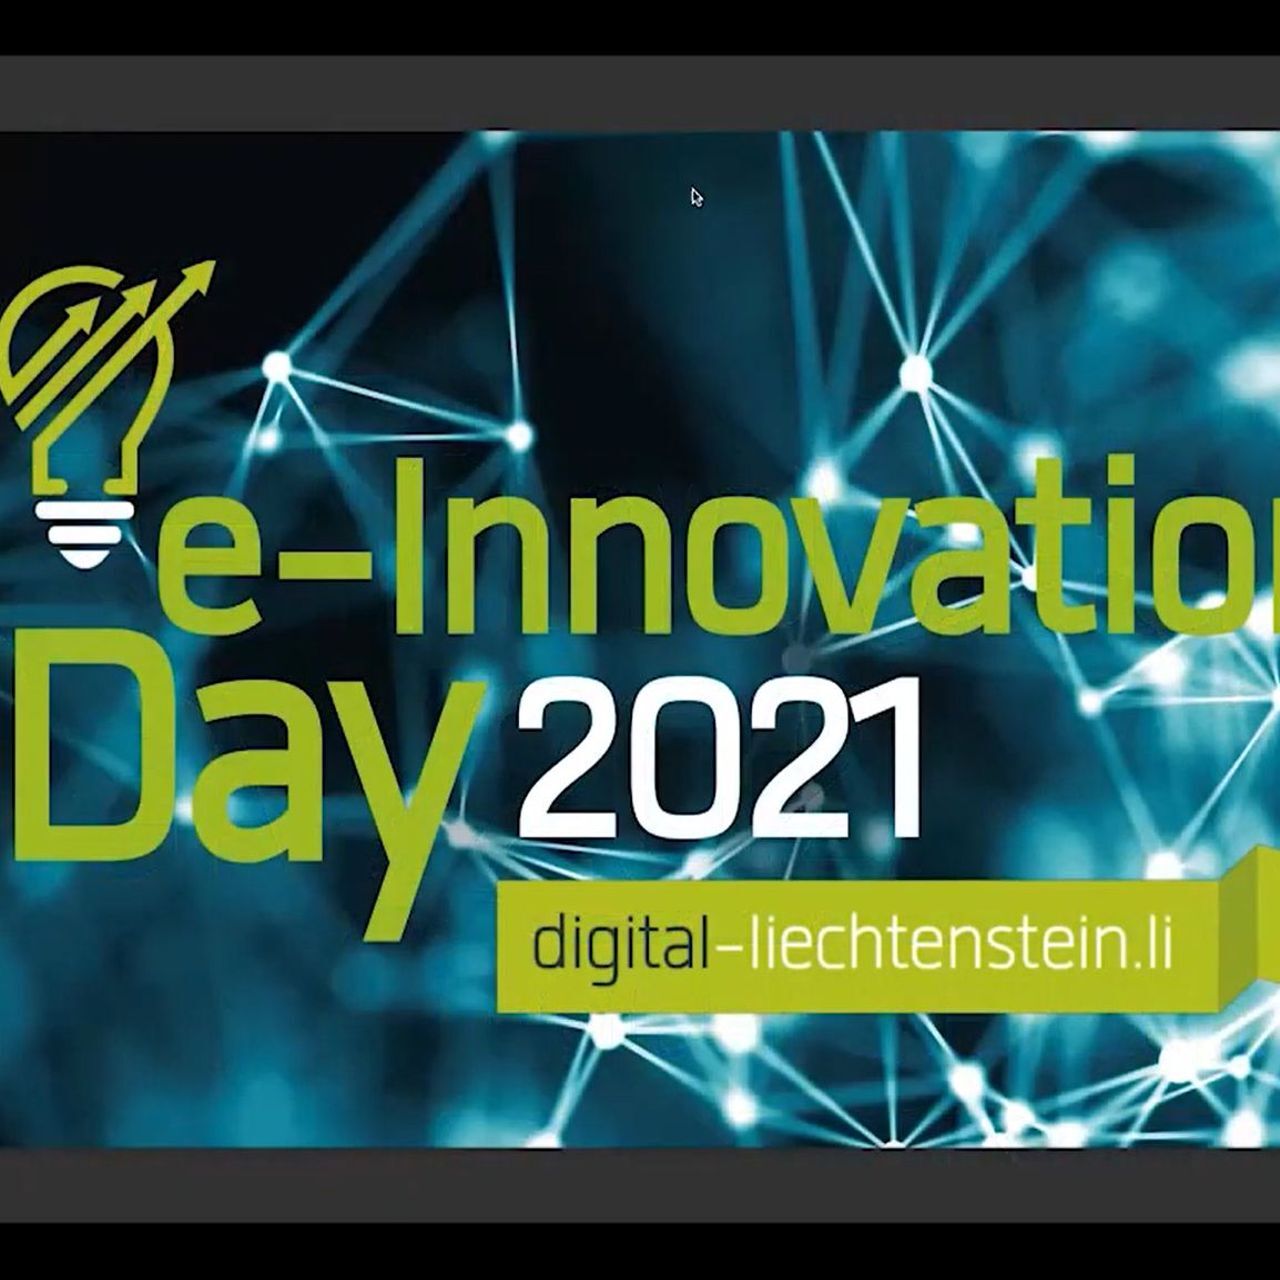 День электронных инноваций: начальный кадр вебинара «Электронные инновации», Лихтенштейн, 2021 г.